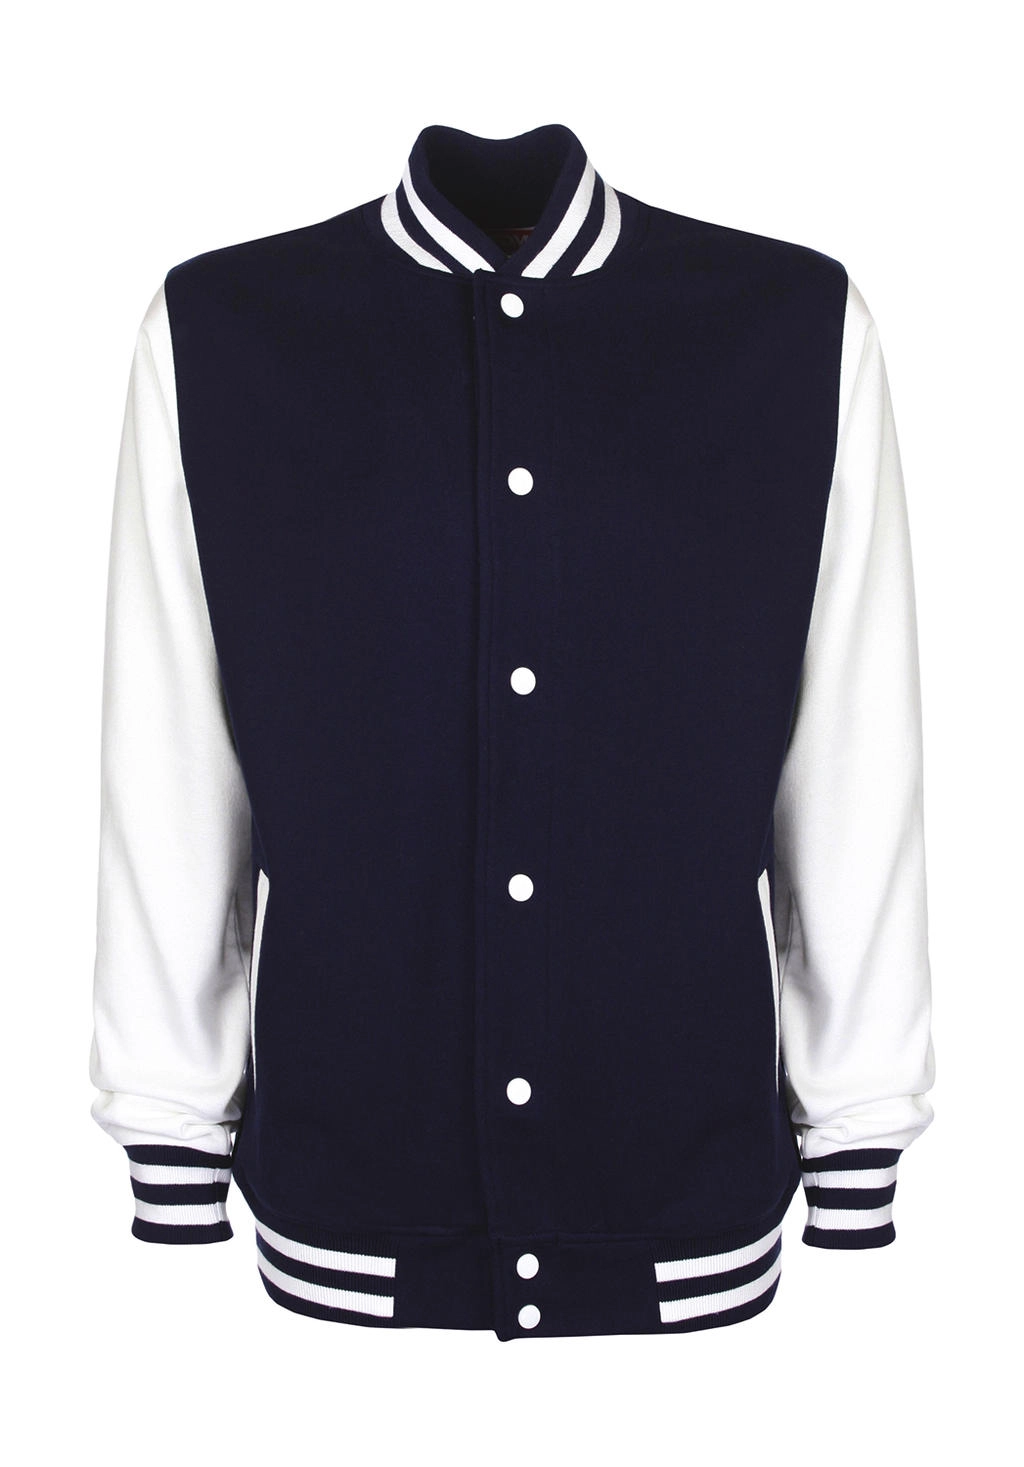 Varsity Jacket zum Besticken und Bedrucken in der Farbe Navy/White mit Ihren Logo, Schriftzug oder Motiv.